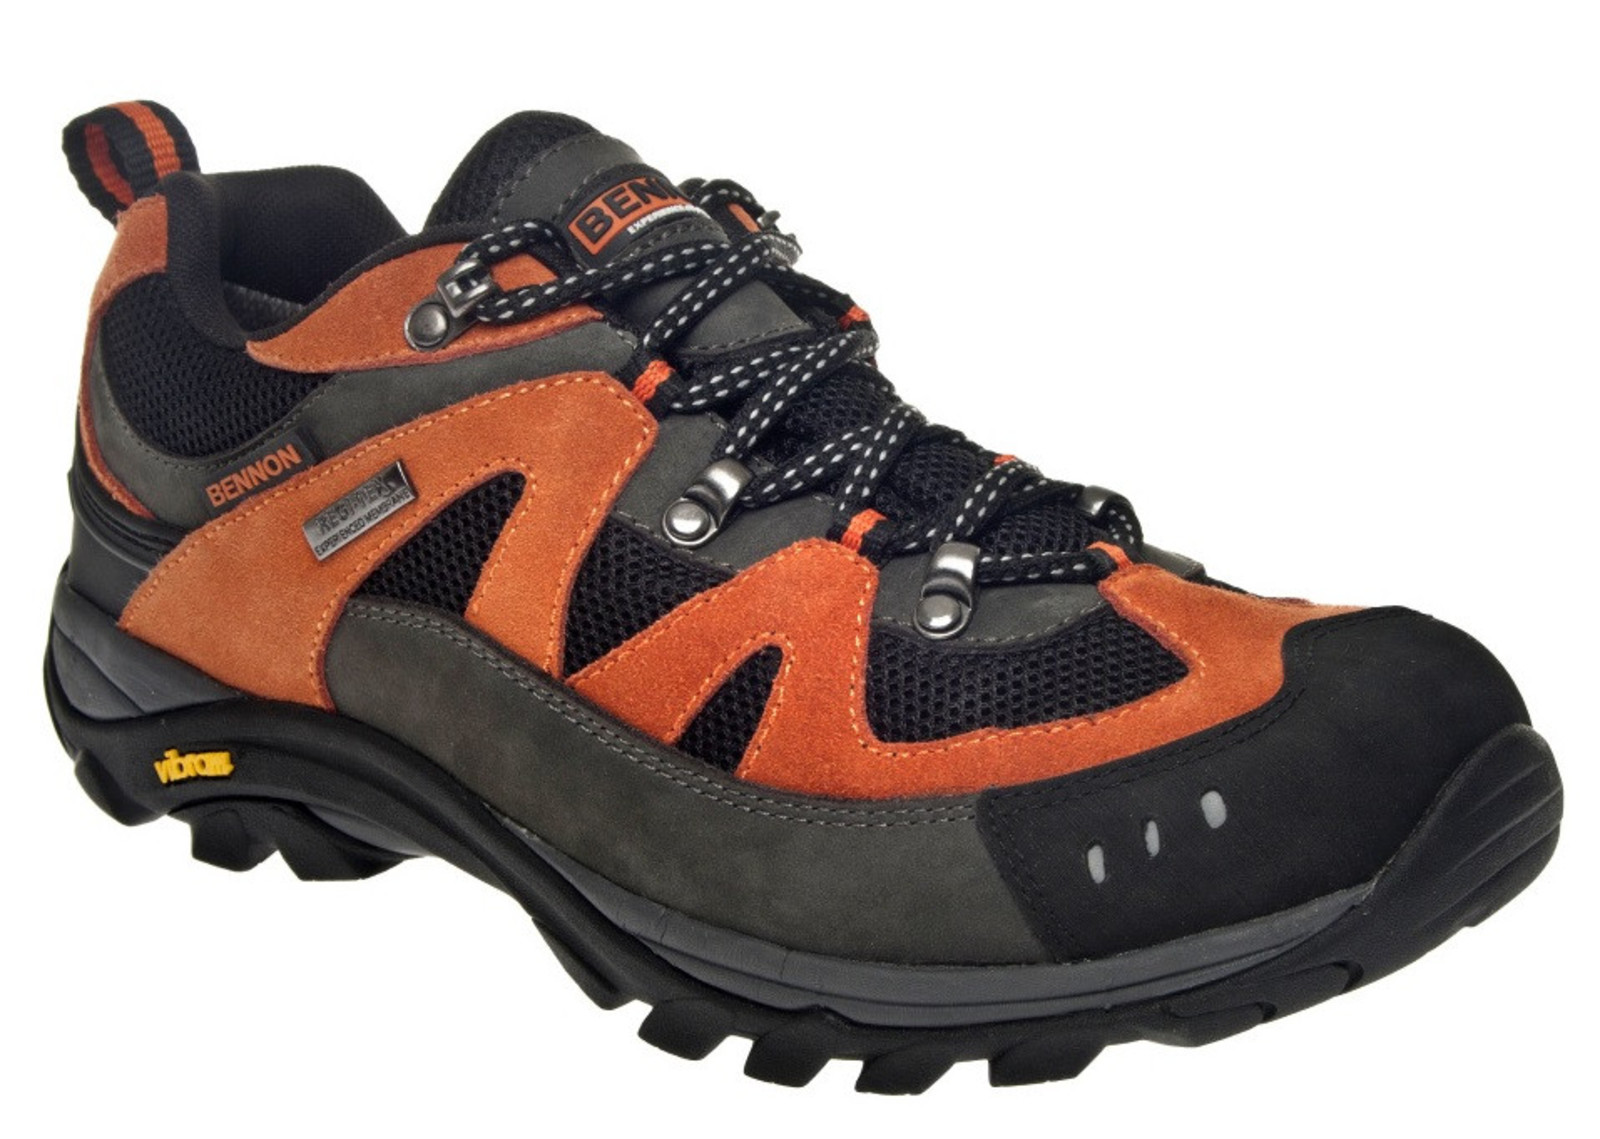 Outdoorové topánky Bennon Emperado s membránou - veľkosť: 43, farba: sivá/oranžová